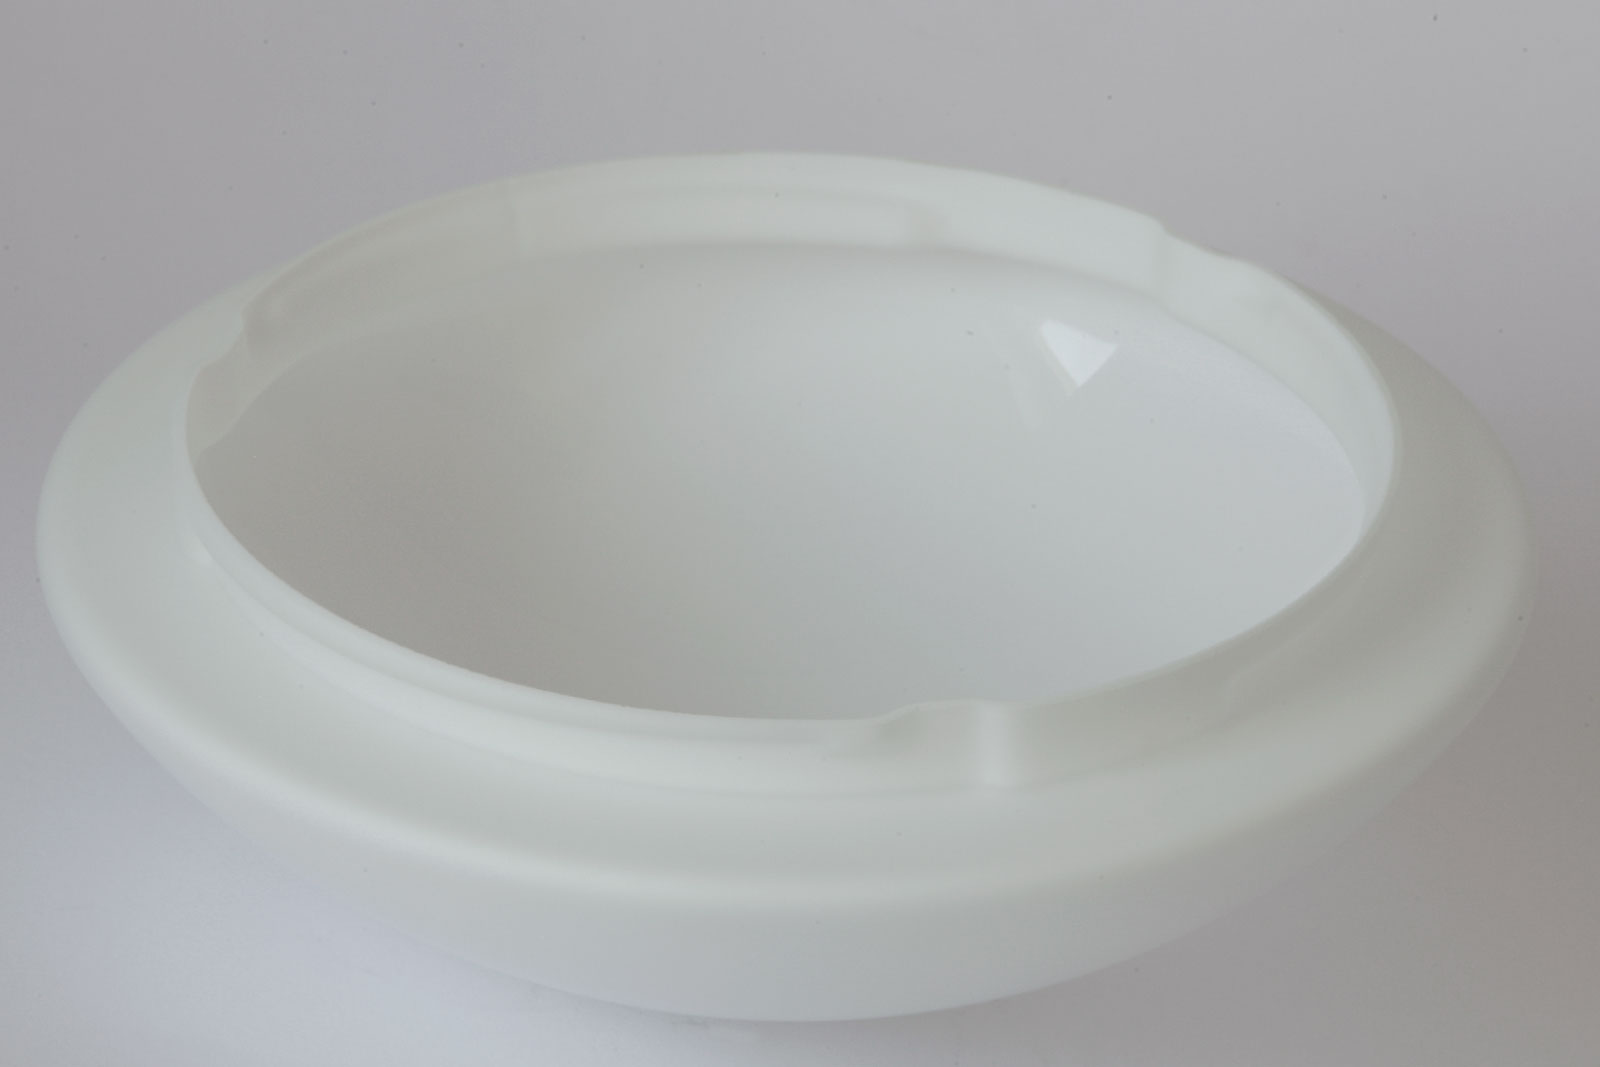 Funktionale Opalglas-Deckenleuchte AURORA LED, Ø 20–60 cm: Außen samtig mattiertes Triplex-Opalglas, Ø 30 cm mit Bajonetthalterung